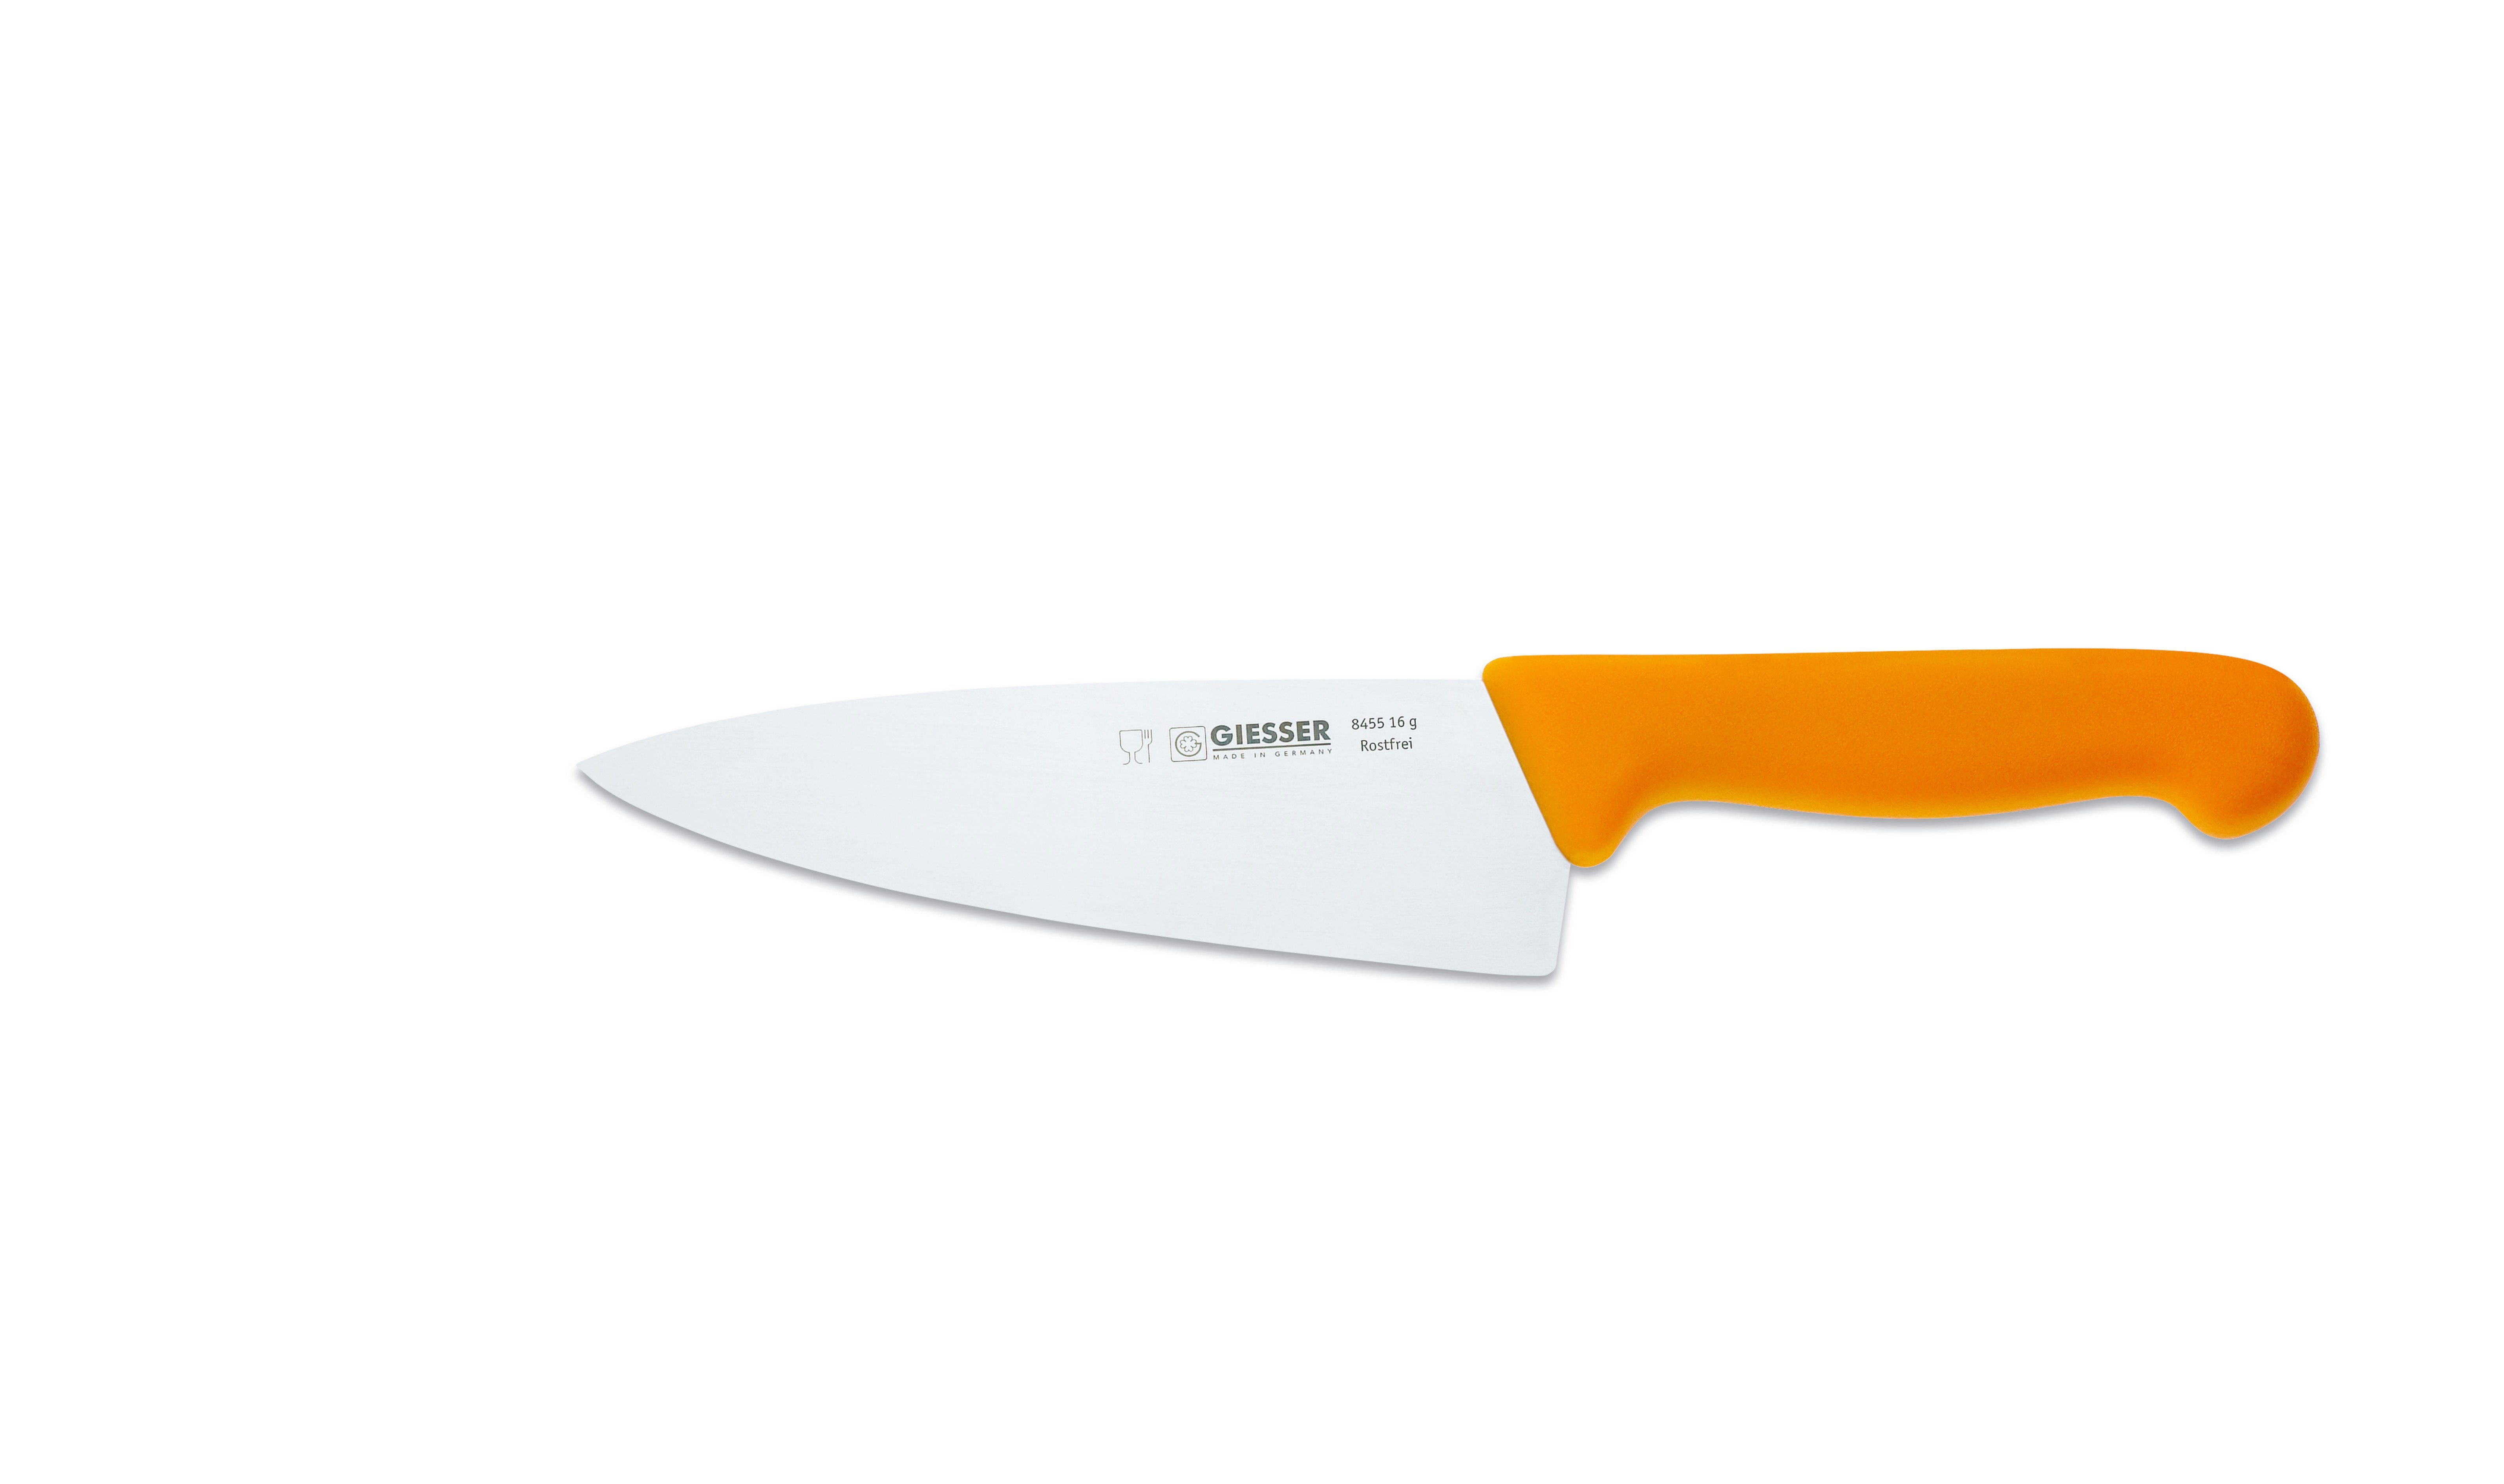 Giesser Messer 8455, jede Küchenmesser breite für Ideal Kochmesser Form, Küche Handabzug, Rostfrei, breit scharf, gelb